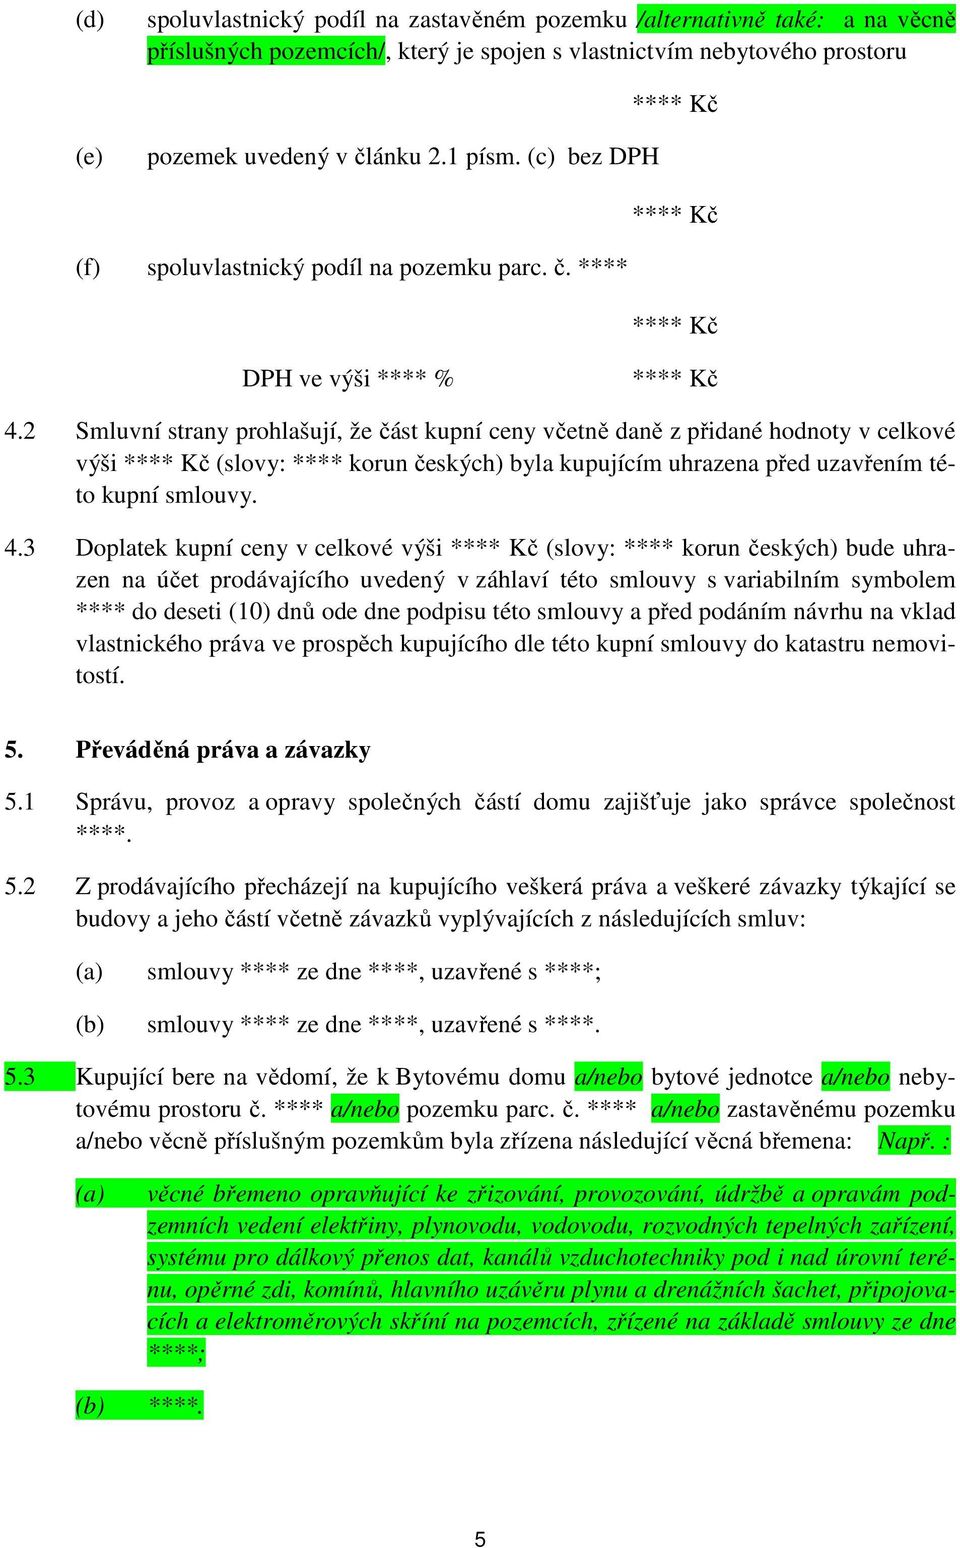 2 Smluvní strany prohlašují, že část kupní ceny včetně daně z přidané hodnoty v celkové výši (slovy: **** korun českých) byla kupujícím uhrazena před uzavřením této kupní smlouvy. 4.